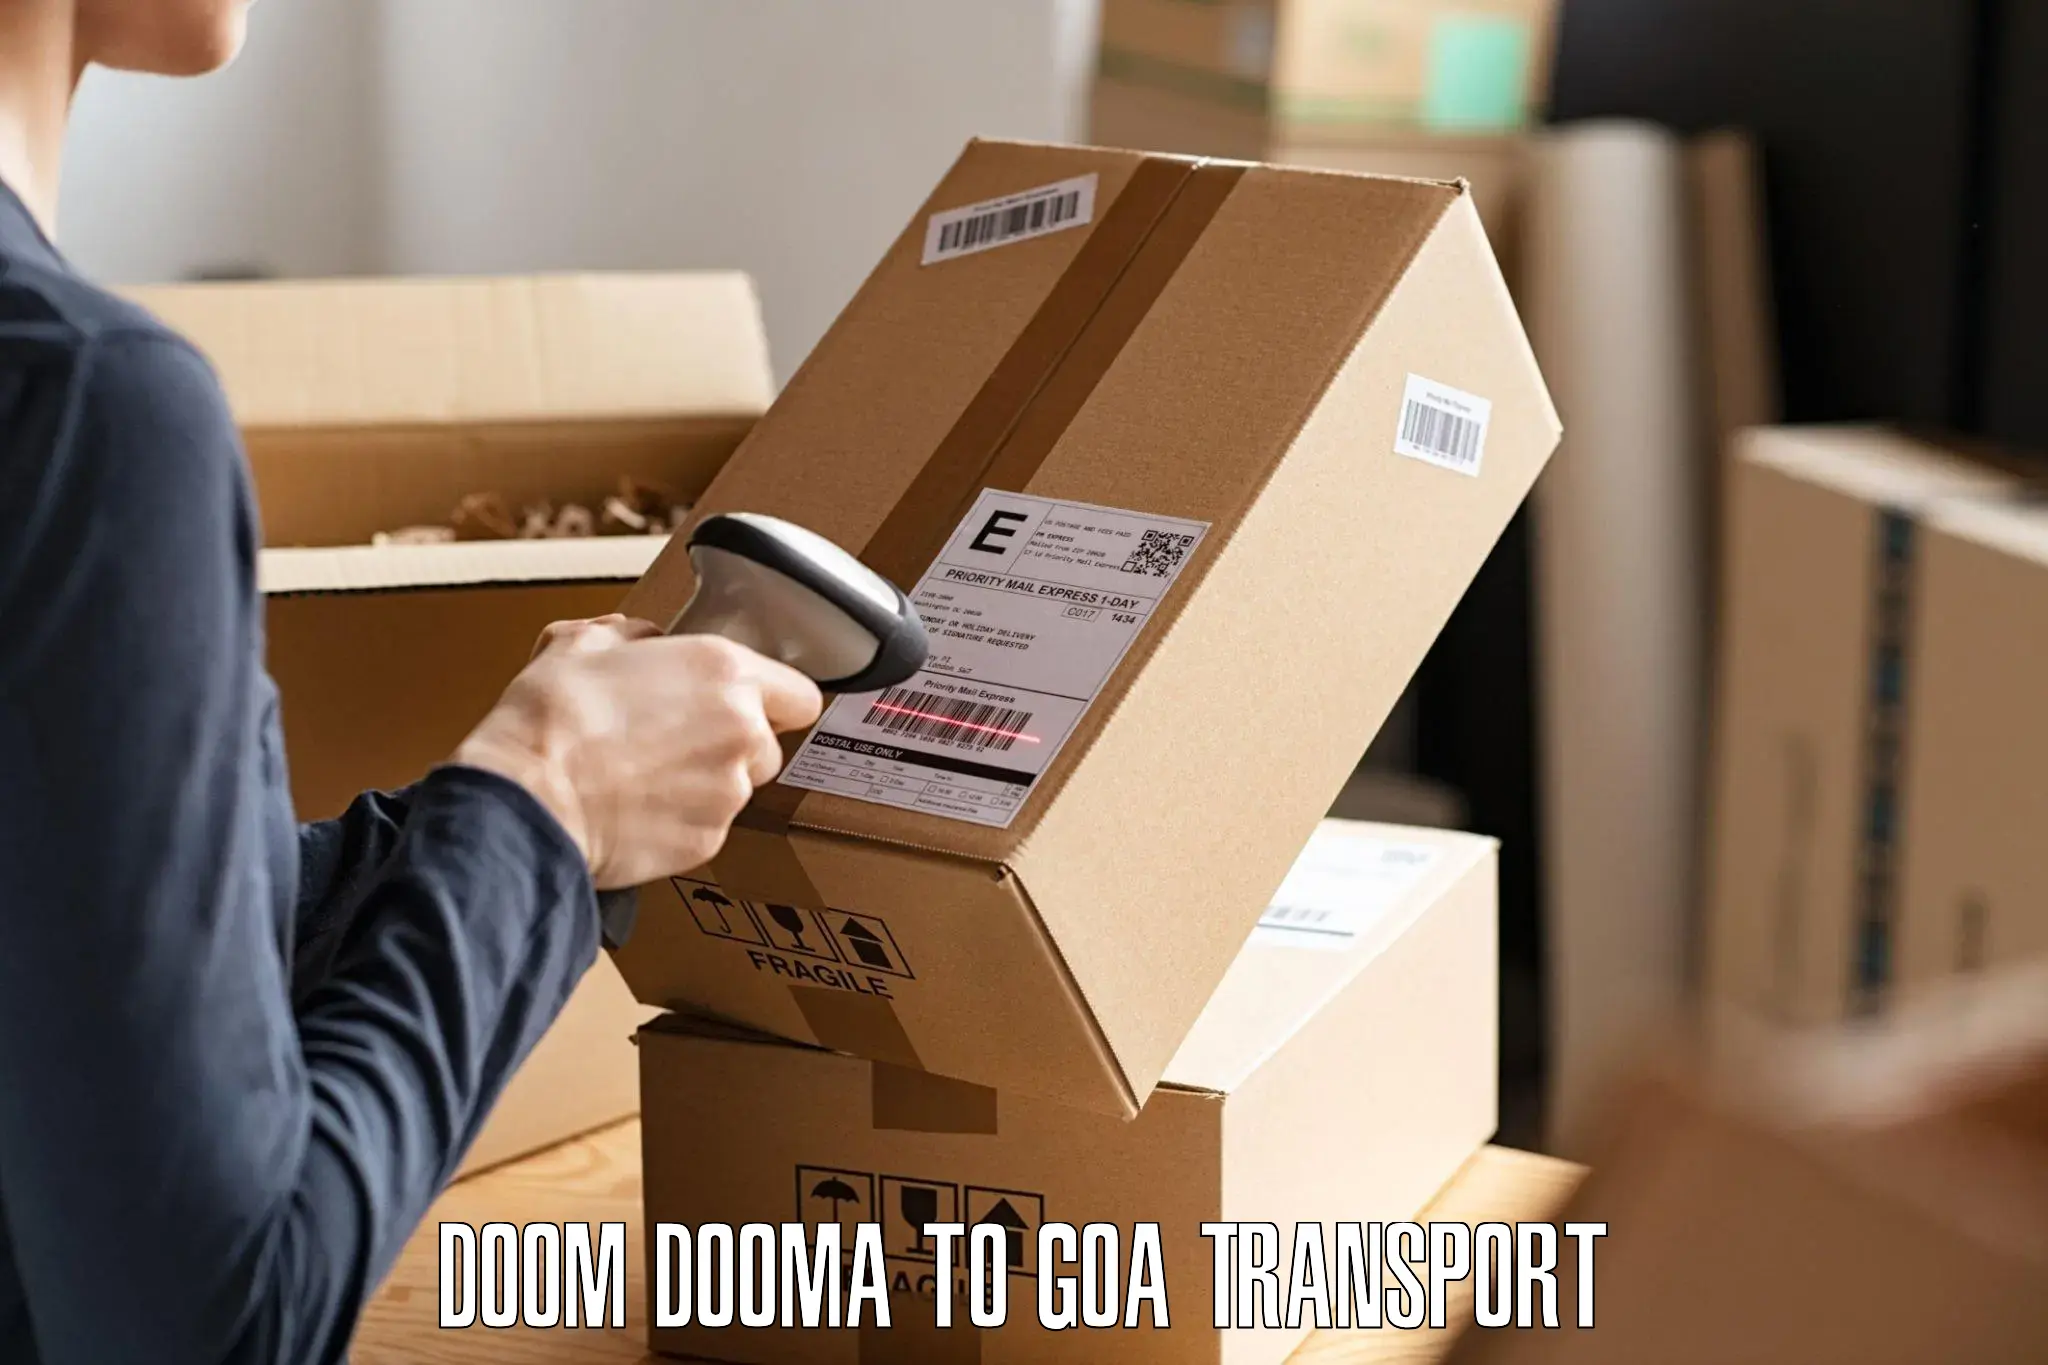 Daily transport service Doom Dooma to Canacona